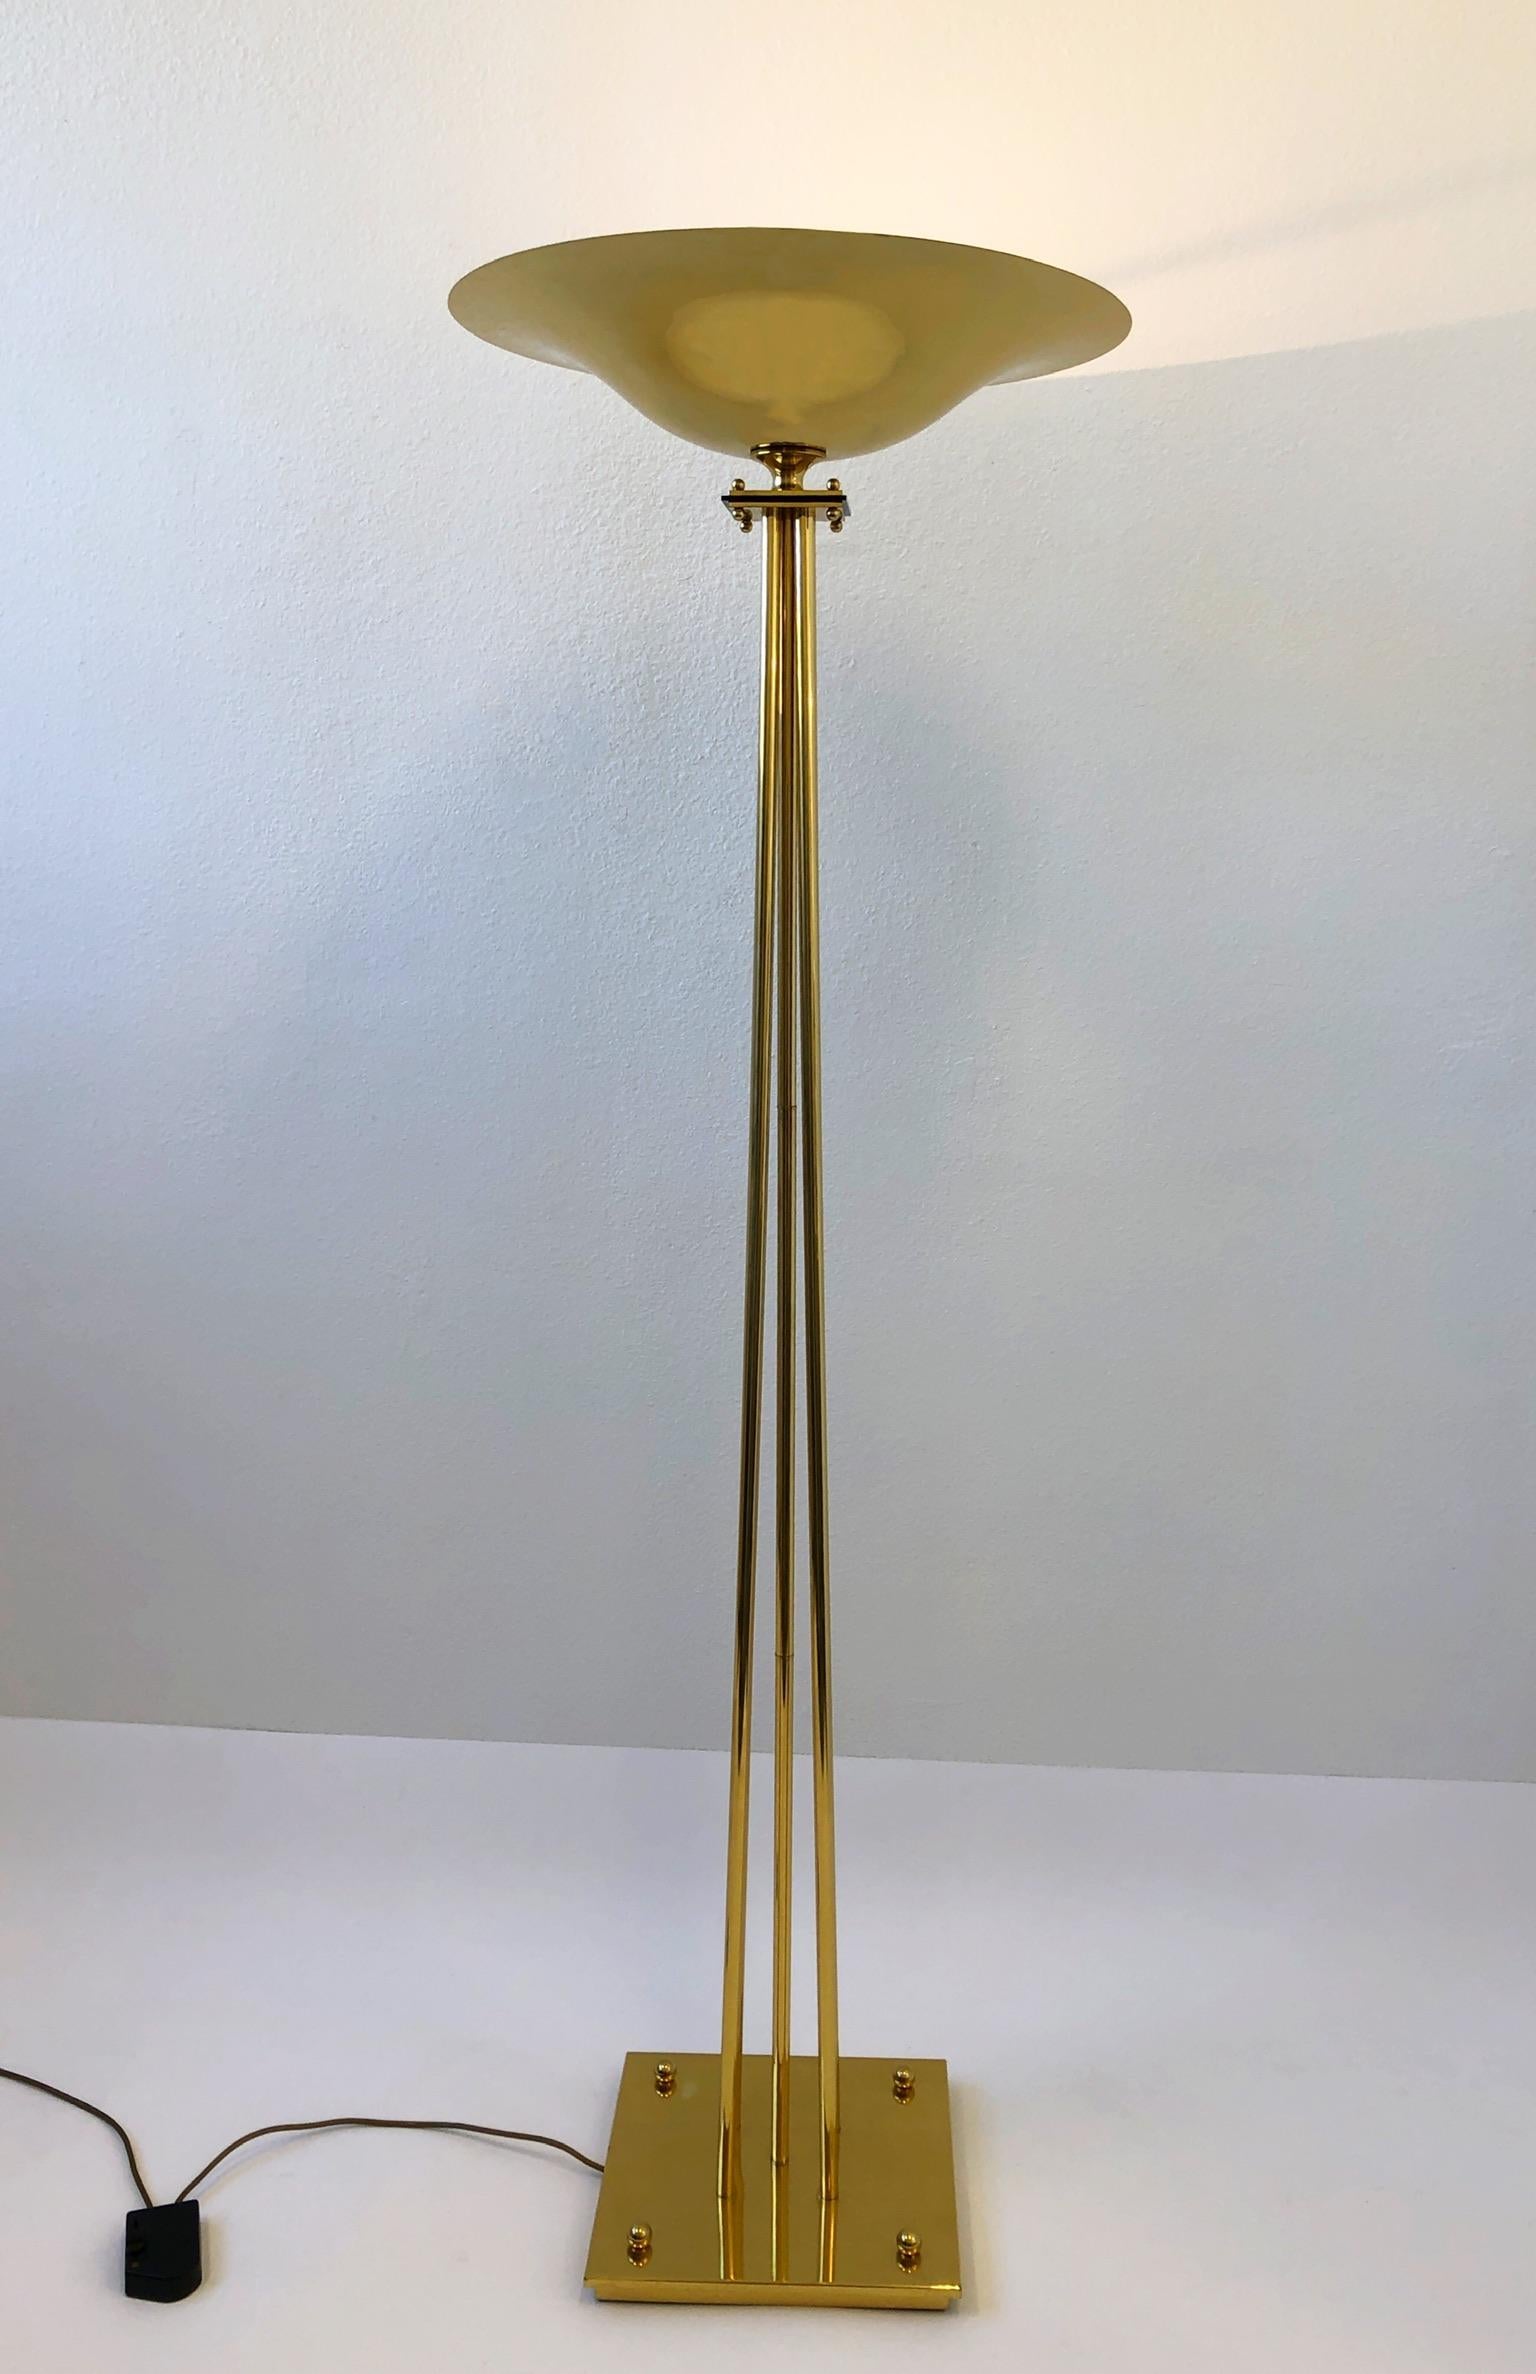 Grand lampadaire torchère en laiton poli italien, conçu par Prearo dans les années 1980.
Il est équipé d'une ampoule halogène de 300 watts et d'un gradateur en ligne à gamme complète.
Marqué Prearo et fabriqué en Italie sur le fond (voir photos